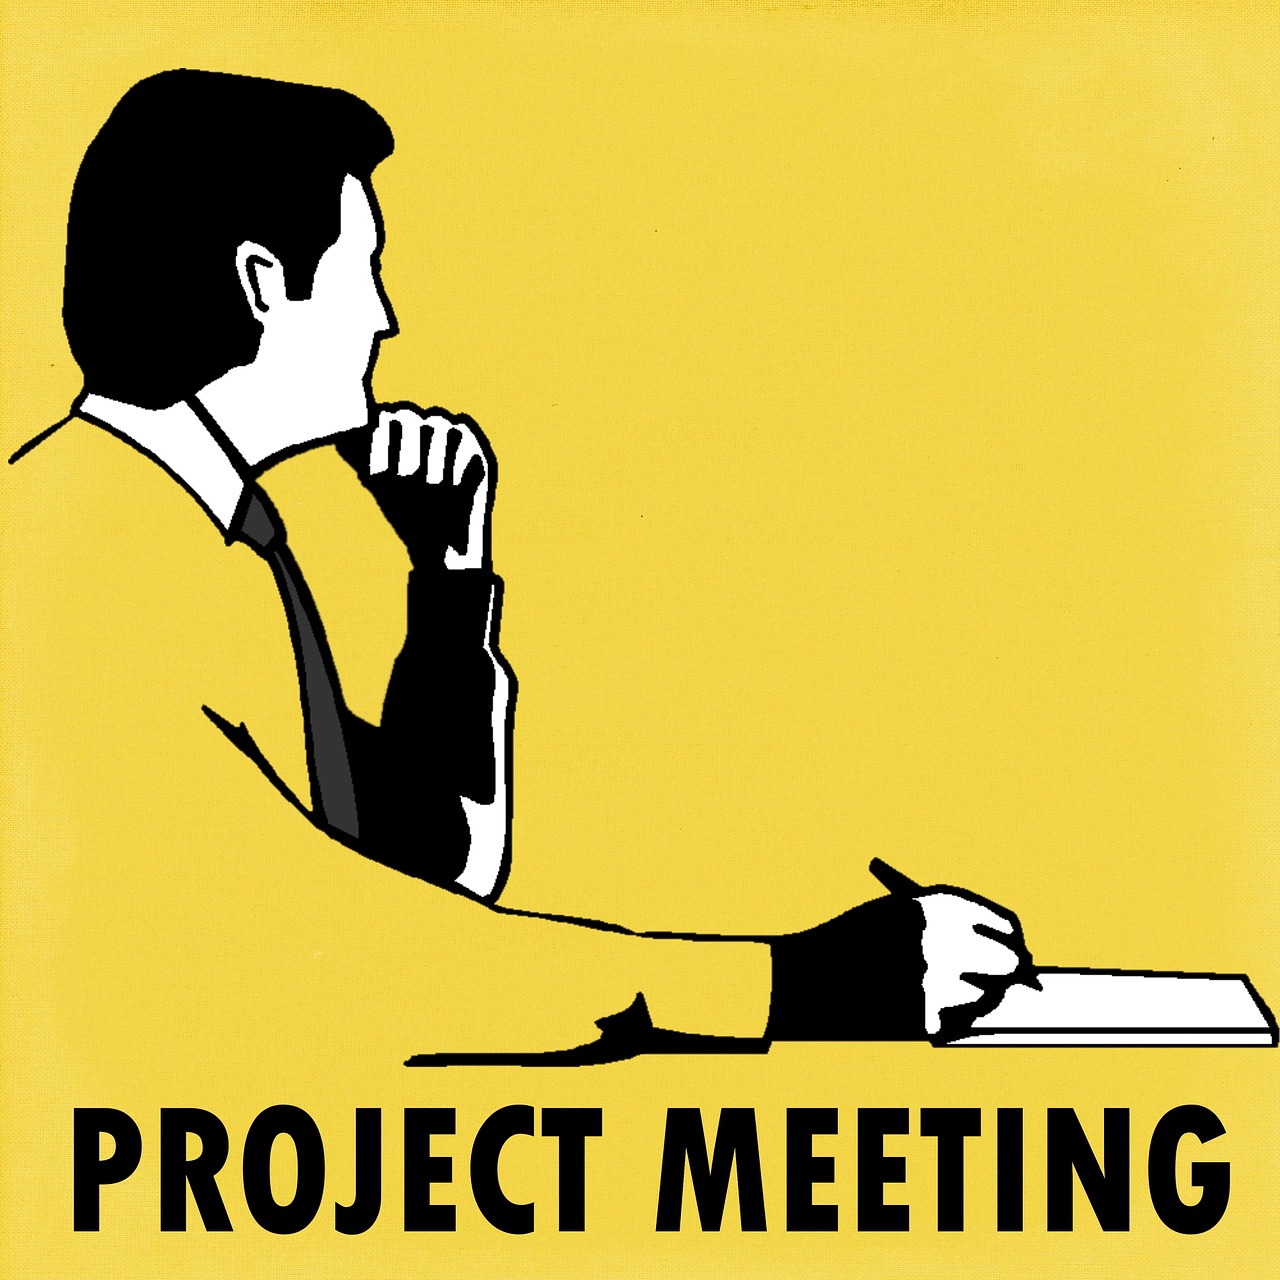 Projekto Susitikimas, Projektas, Susitikimas, Susitikti, Verslas, Valdyti, Valdymas, Vaidmuo, Vyras, Ženklas